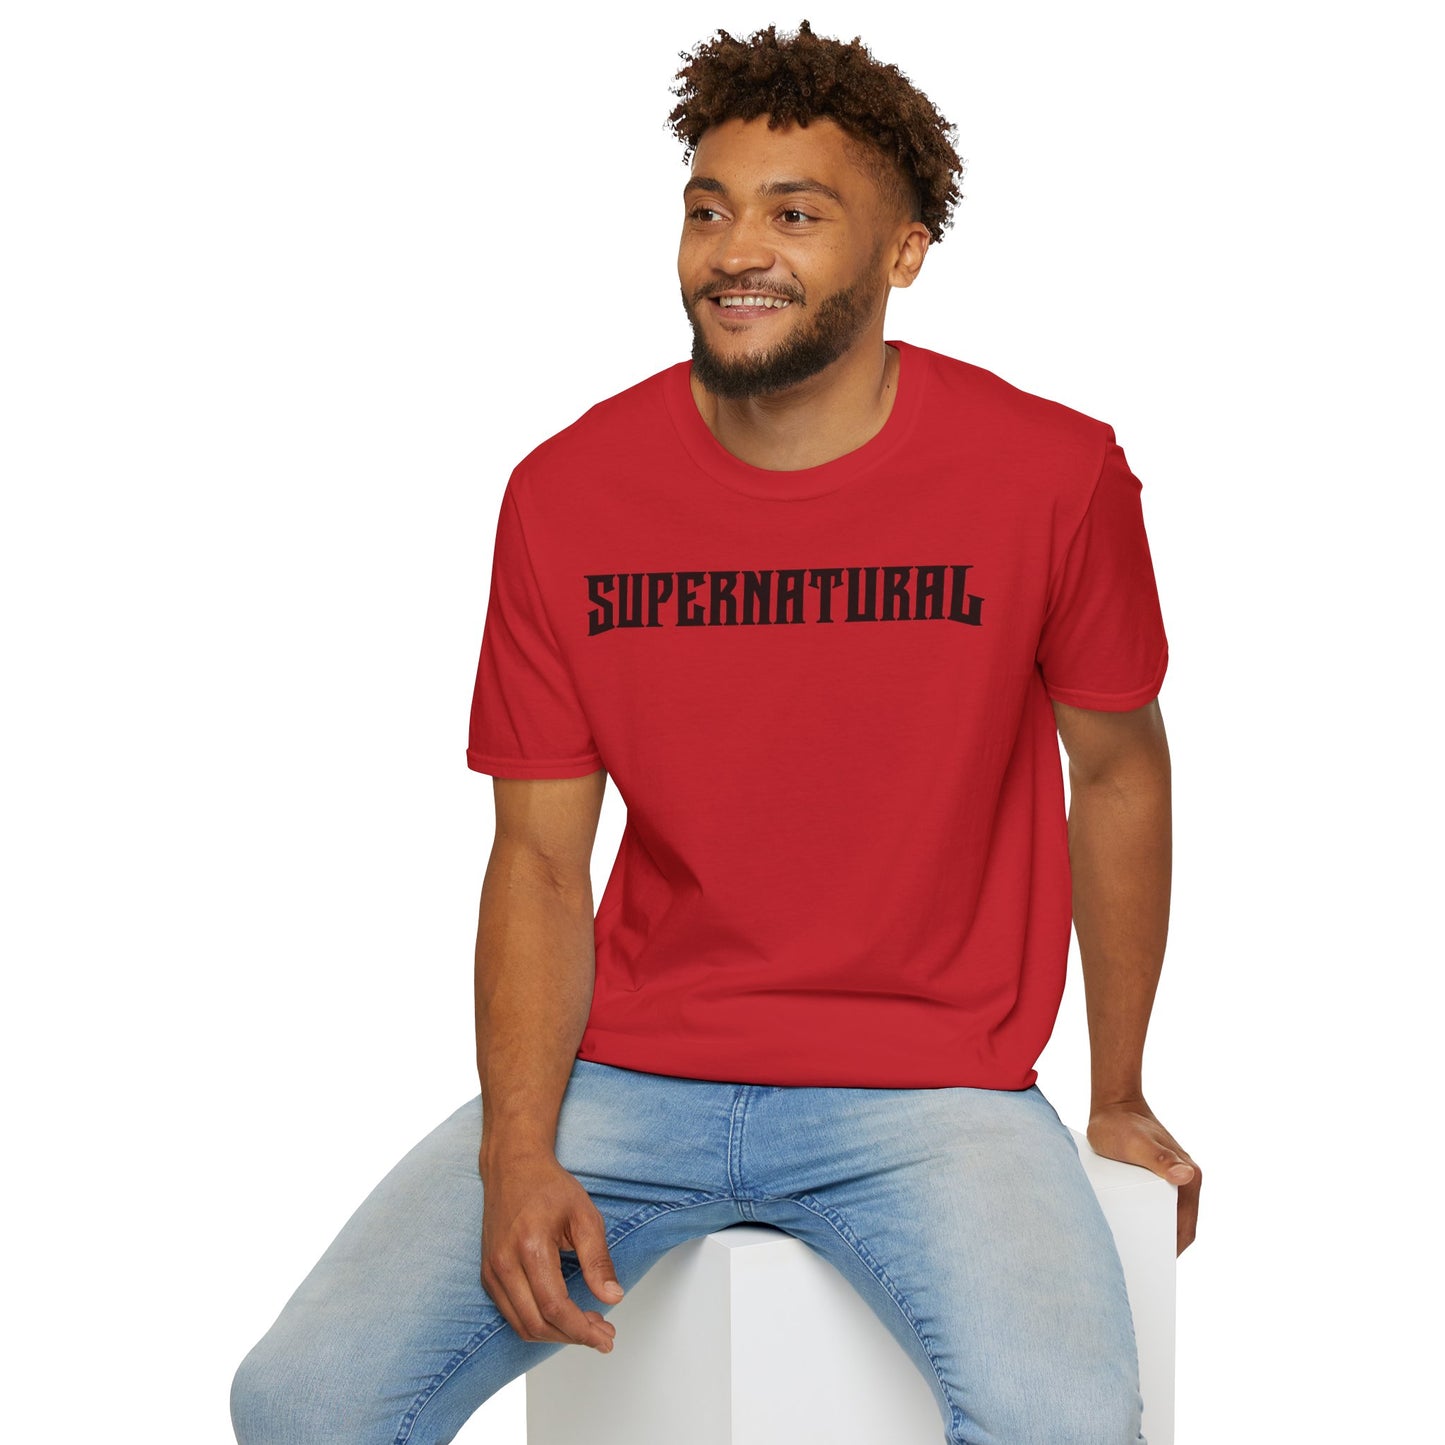 SUPERNATURAL-Unisex Softstyle T-Shirt-UB>UR on the back